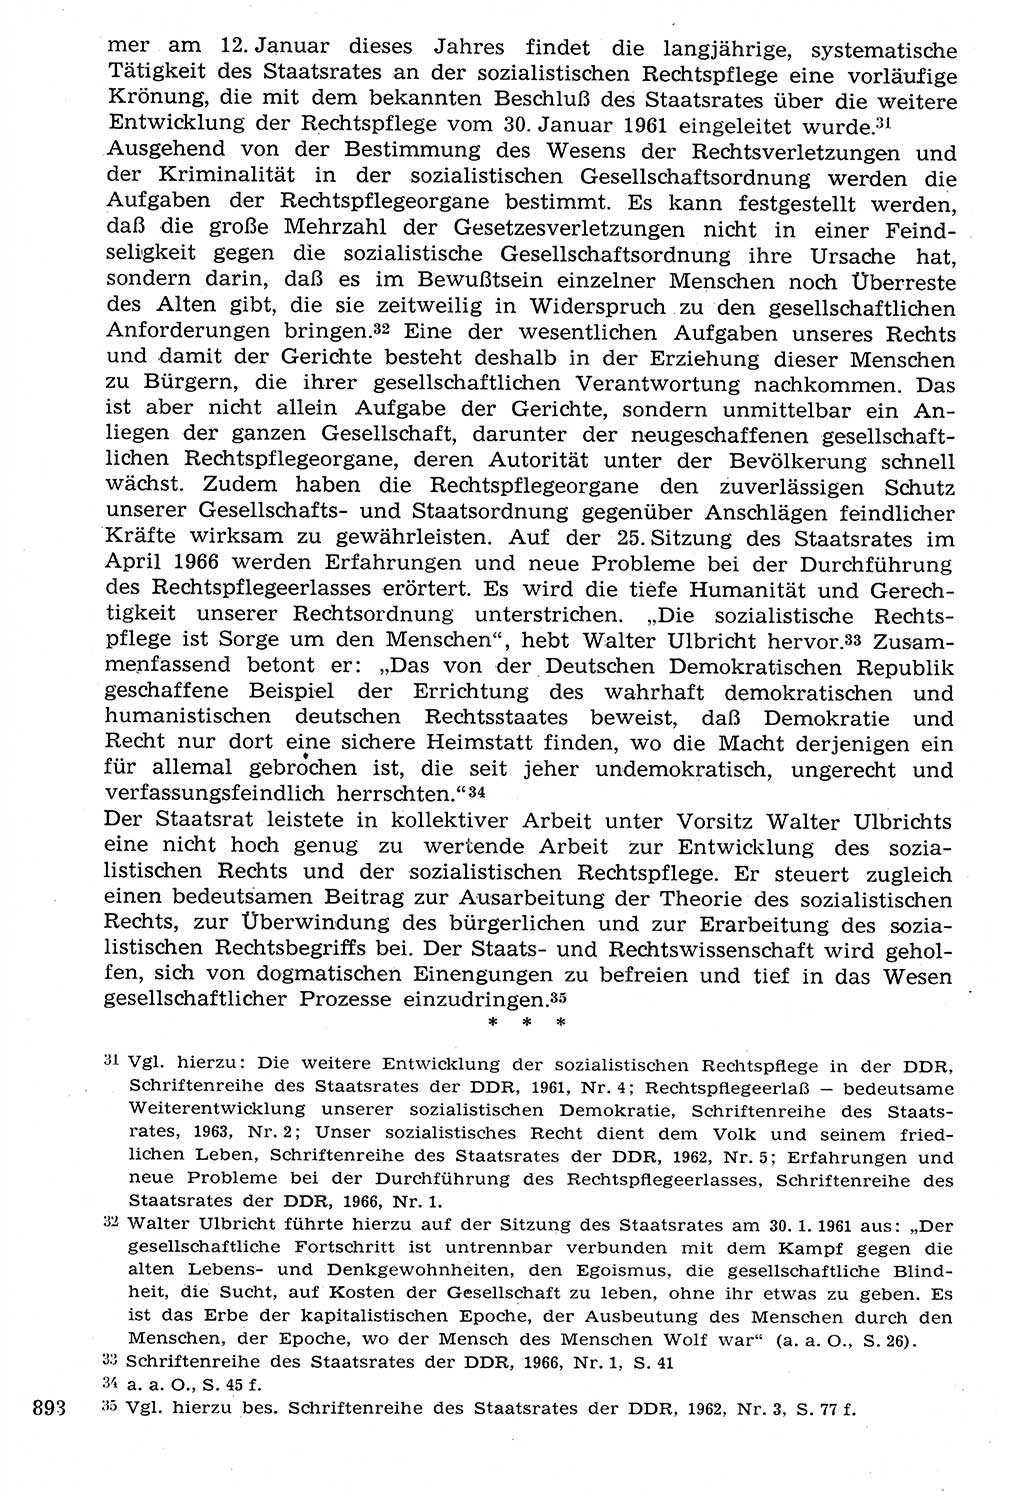 Staat und Recht (StuR), 17. Jahrgang [Deutsche Demokratische Republik (DDR)] 1968, Seite 893 (StuR DDR 1968, S. 893)